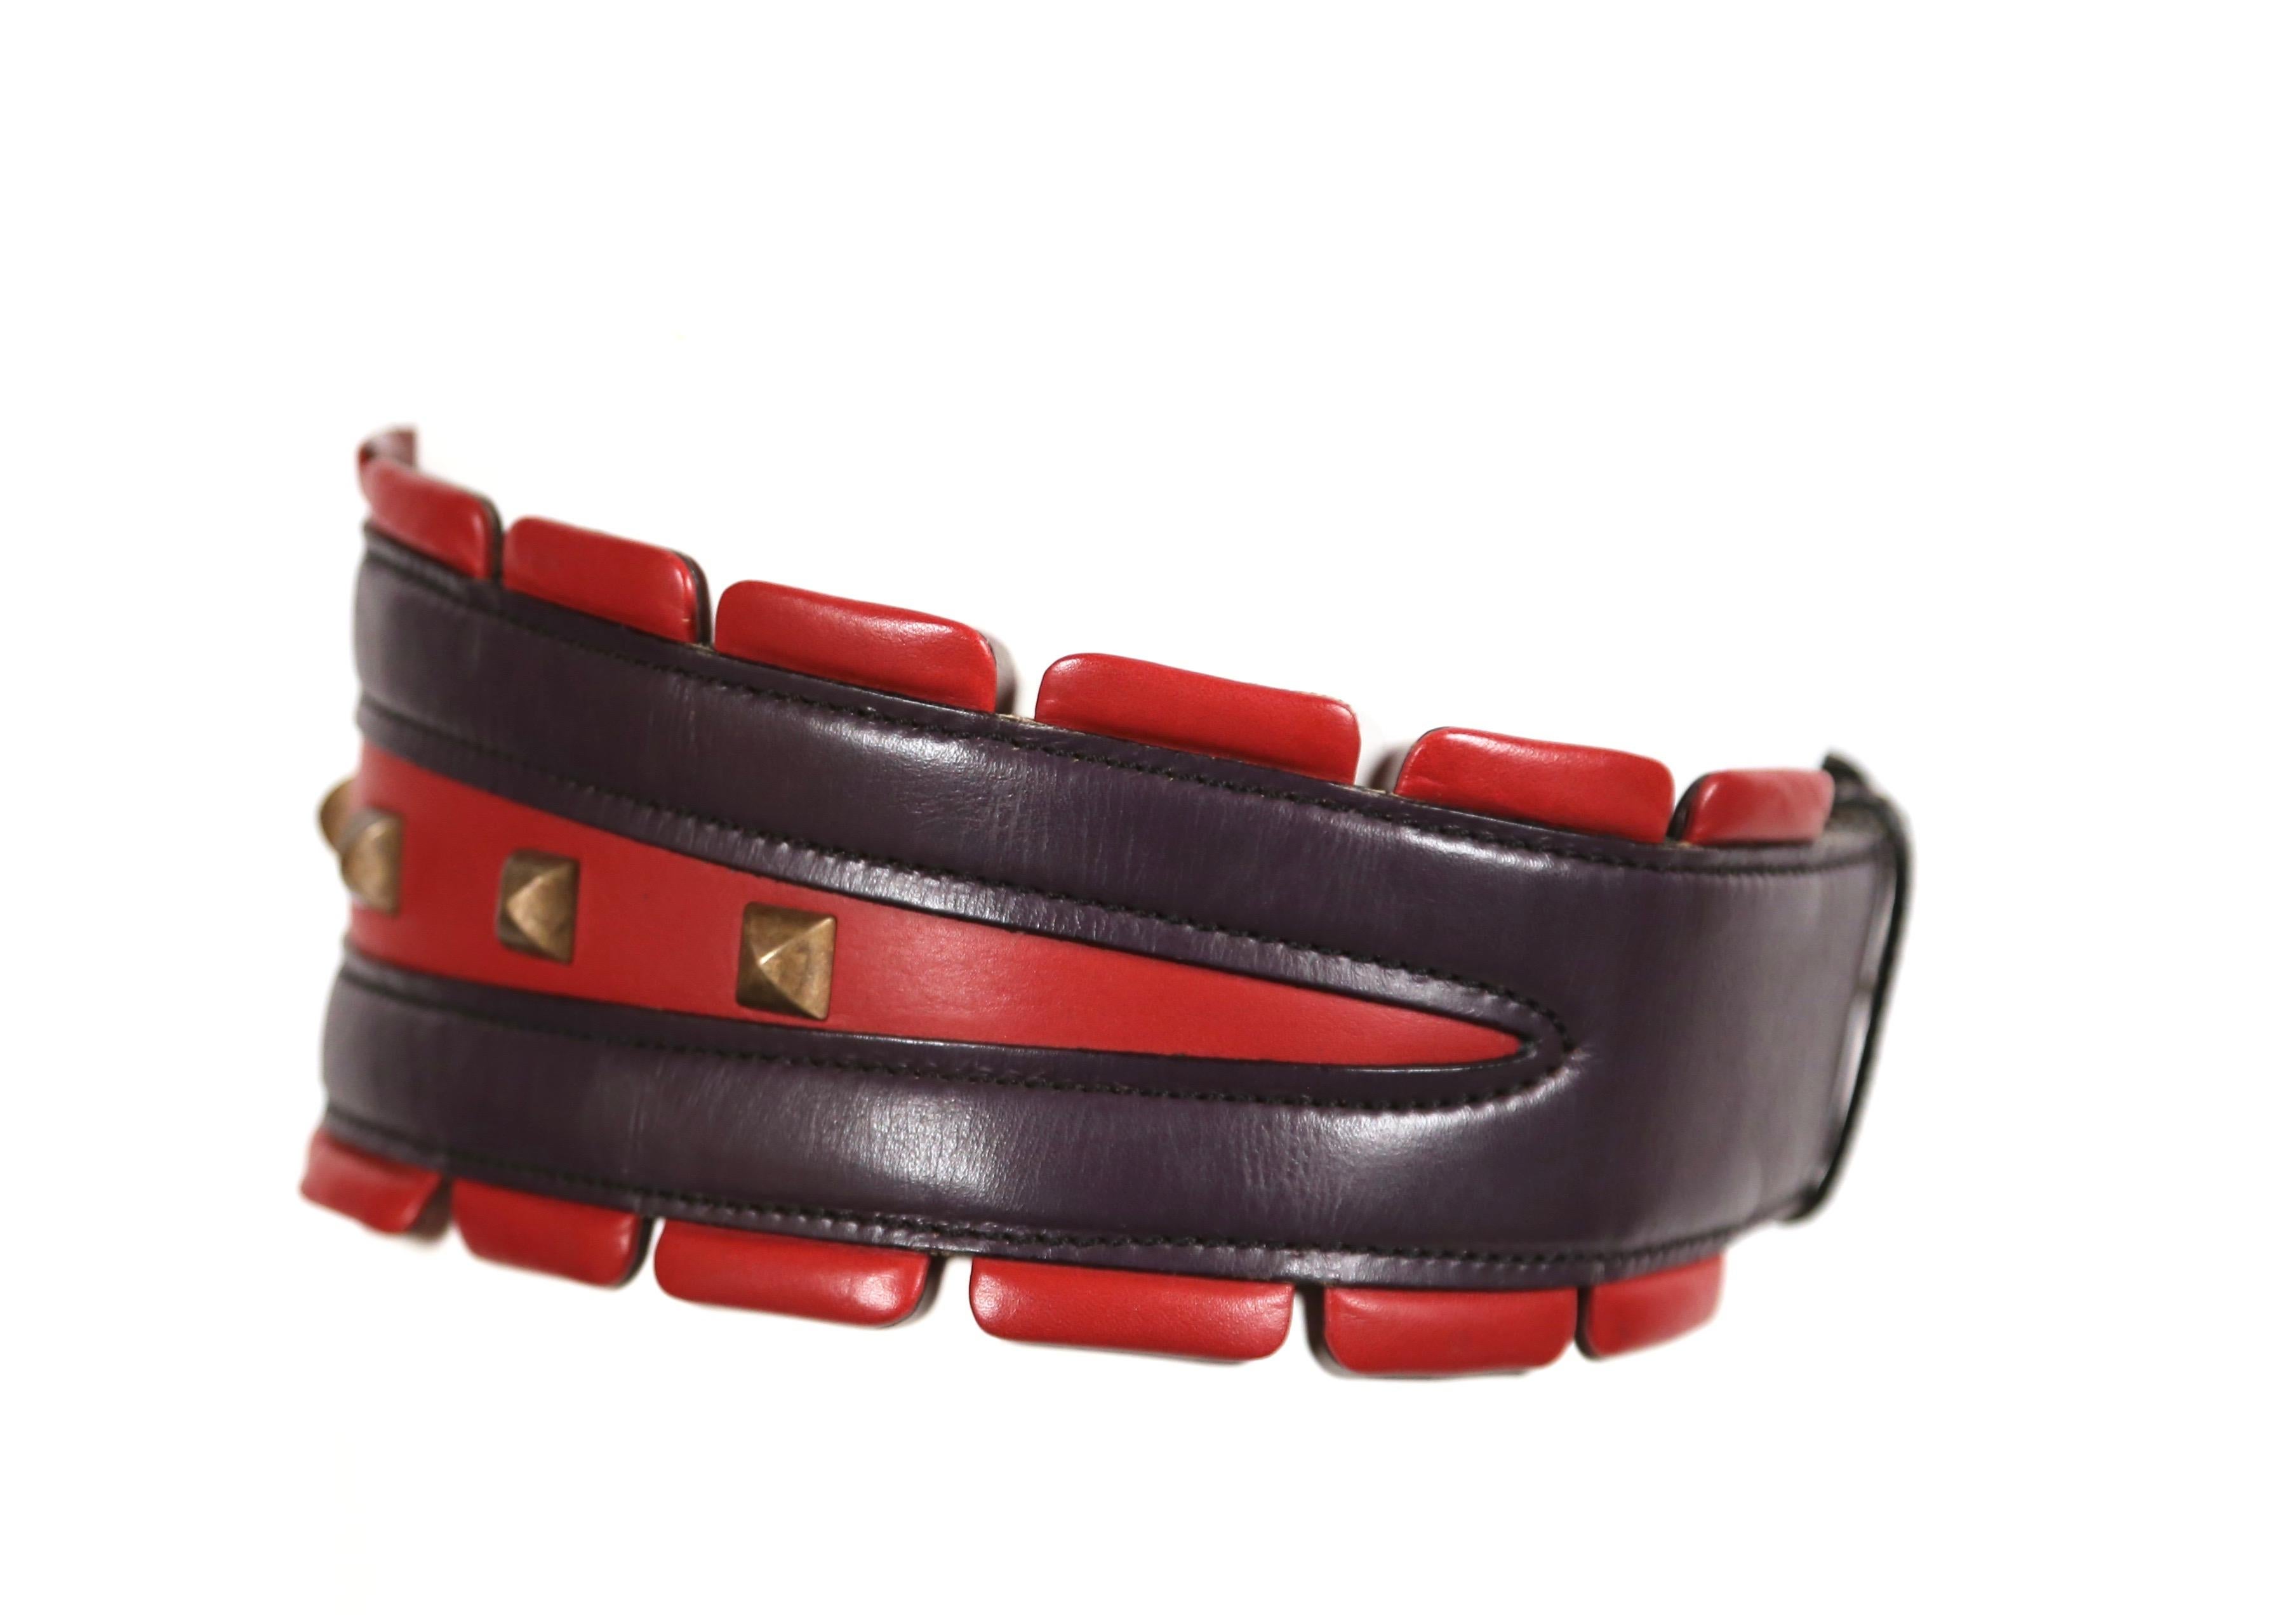 Très rare, ceinture en cuir rouge et violet avec clous pyramidaux en laiton conçue par Azzedine Alaia comme vue sur le défilé de l'automne 1988. La ceinture est étiquetée 65 français et convient idéalement à une taille de 23-25